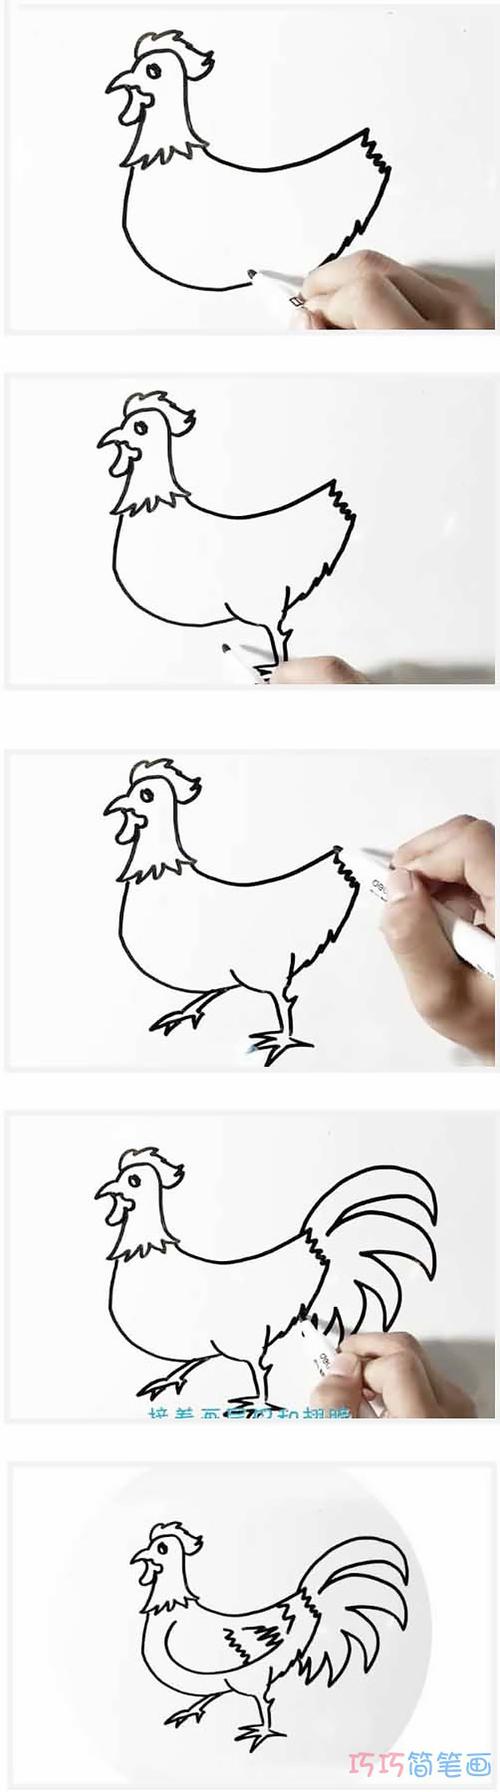 画大公鸡的简笔画